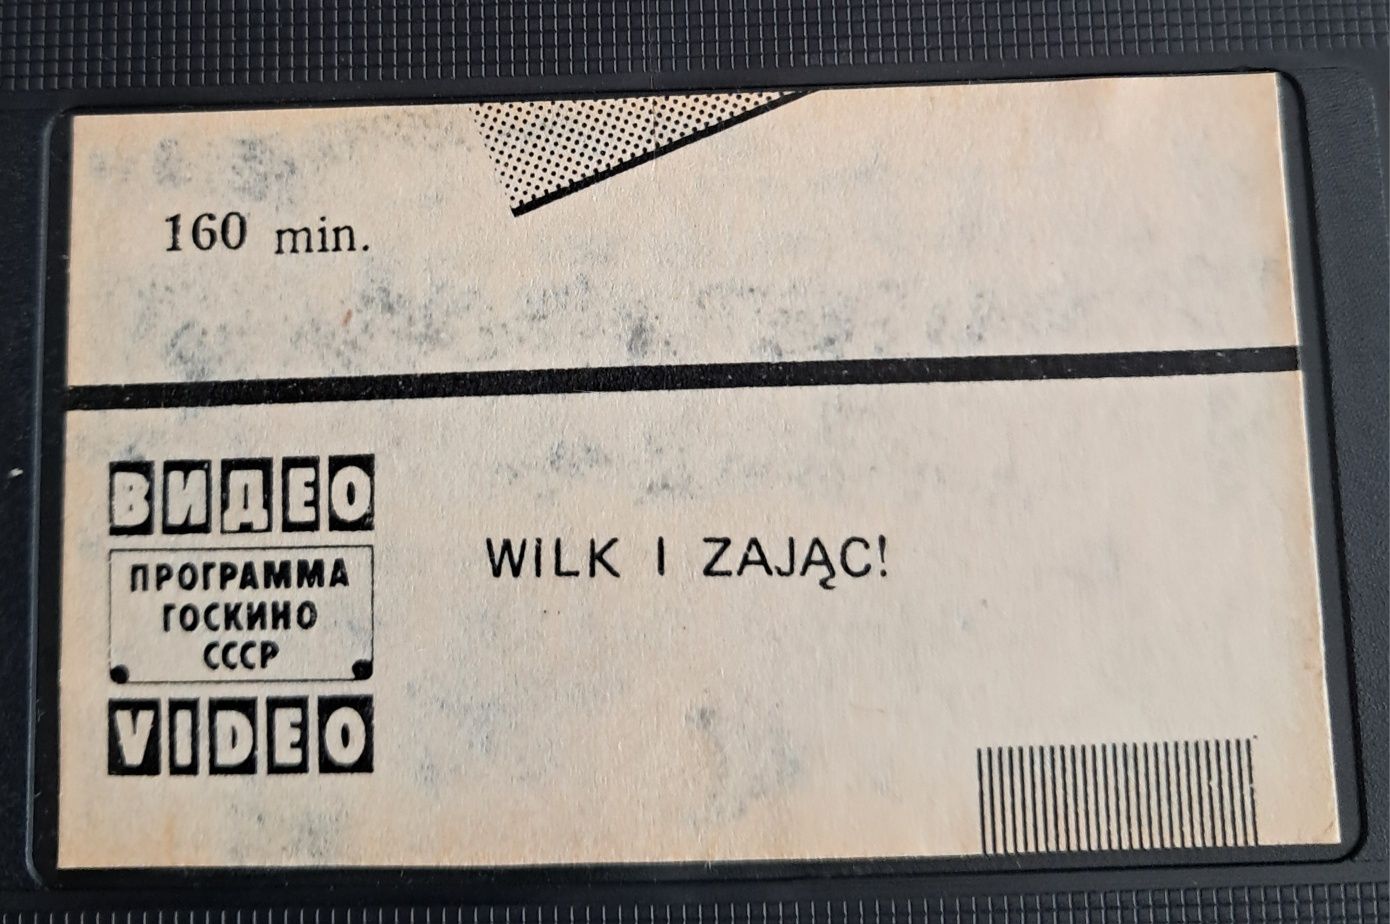 Oryginalna kaseta VHS z filmem Wilk I Zając. Gratka dla kolekcjonera!